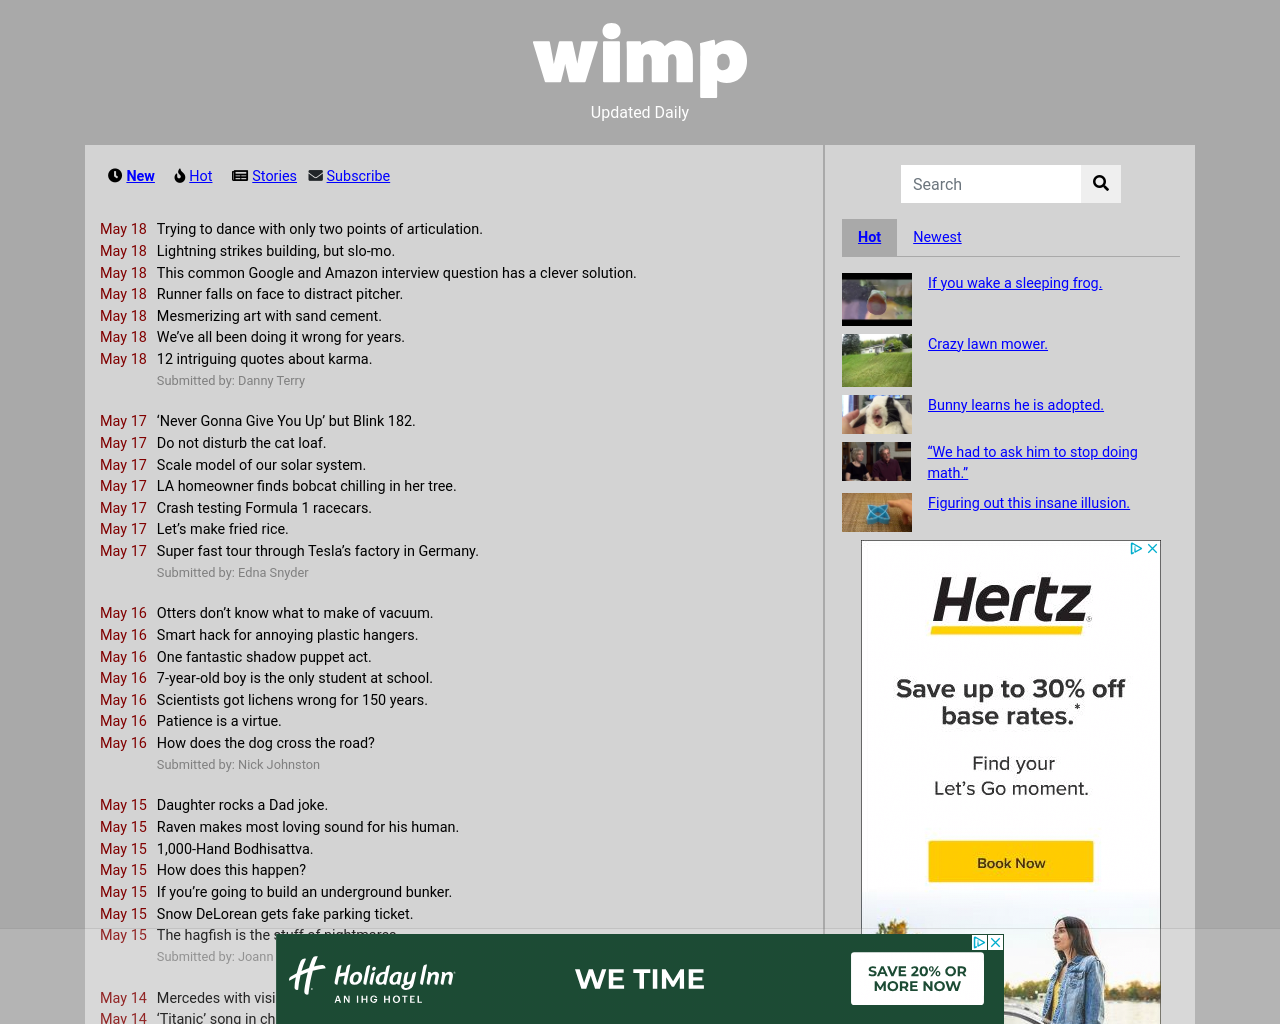 wimp.com